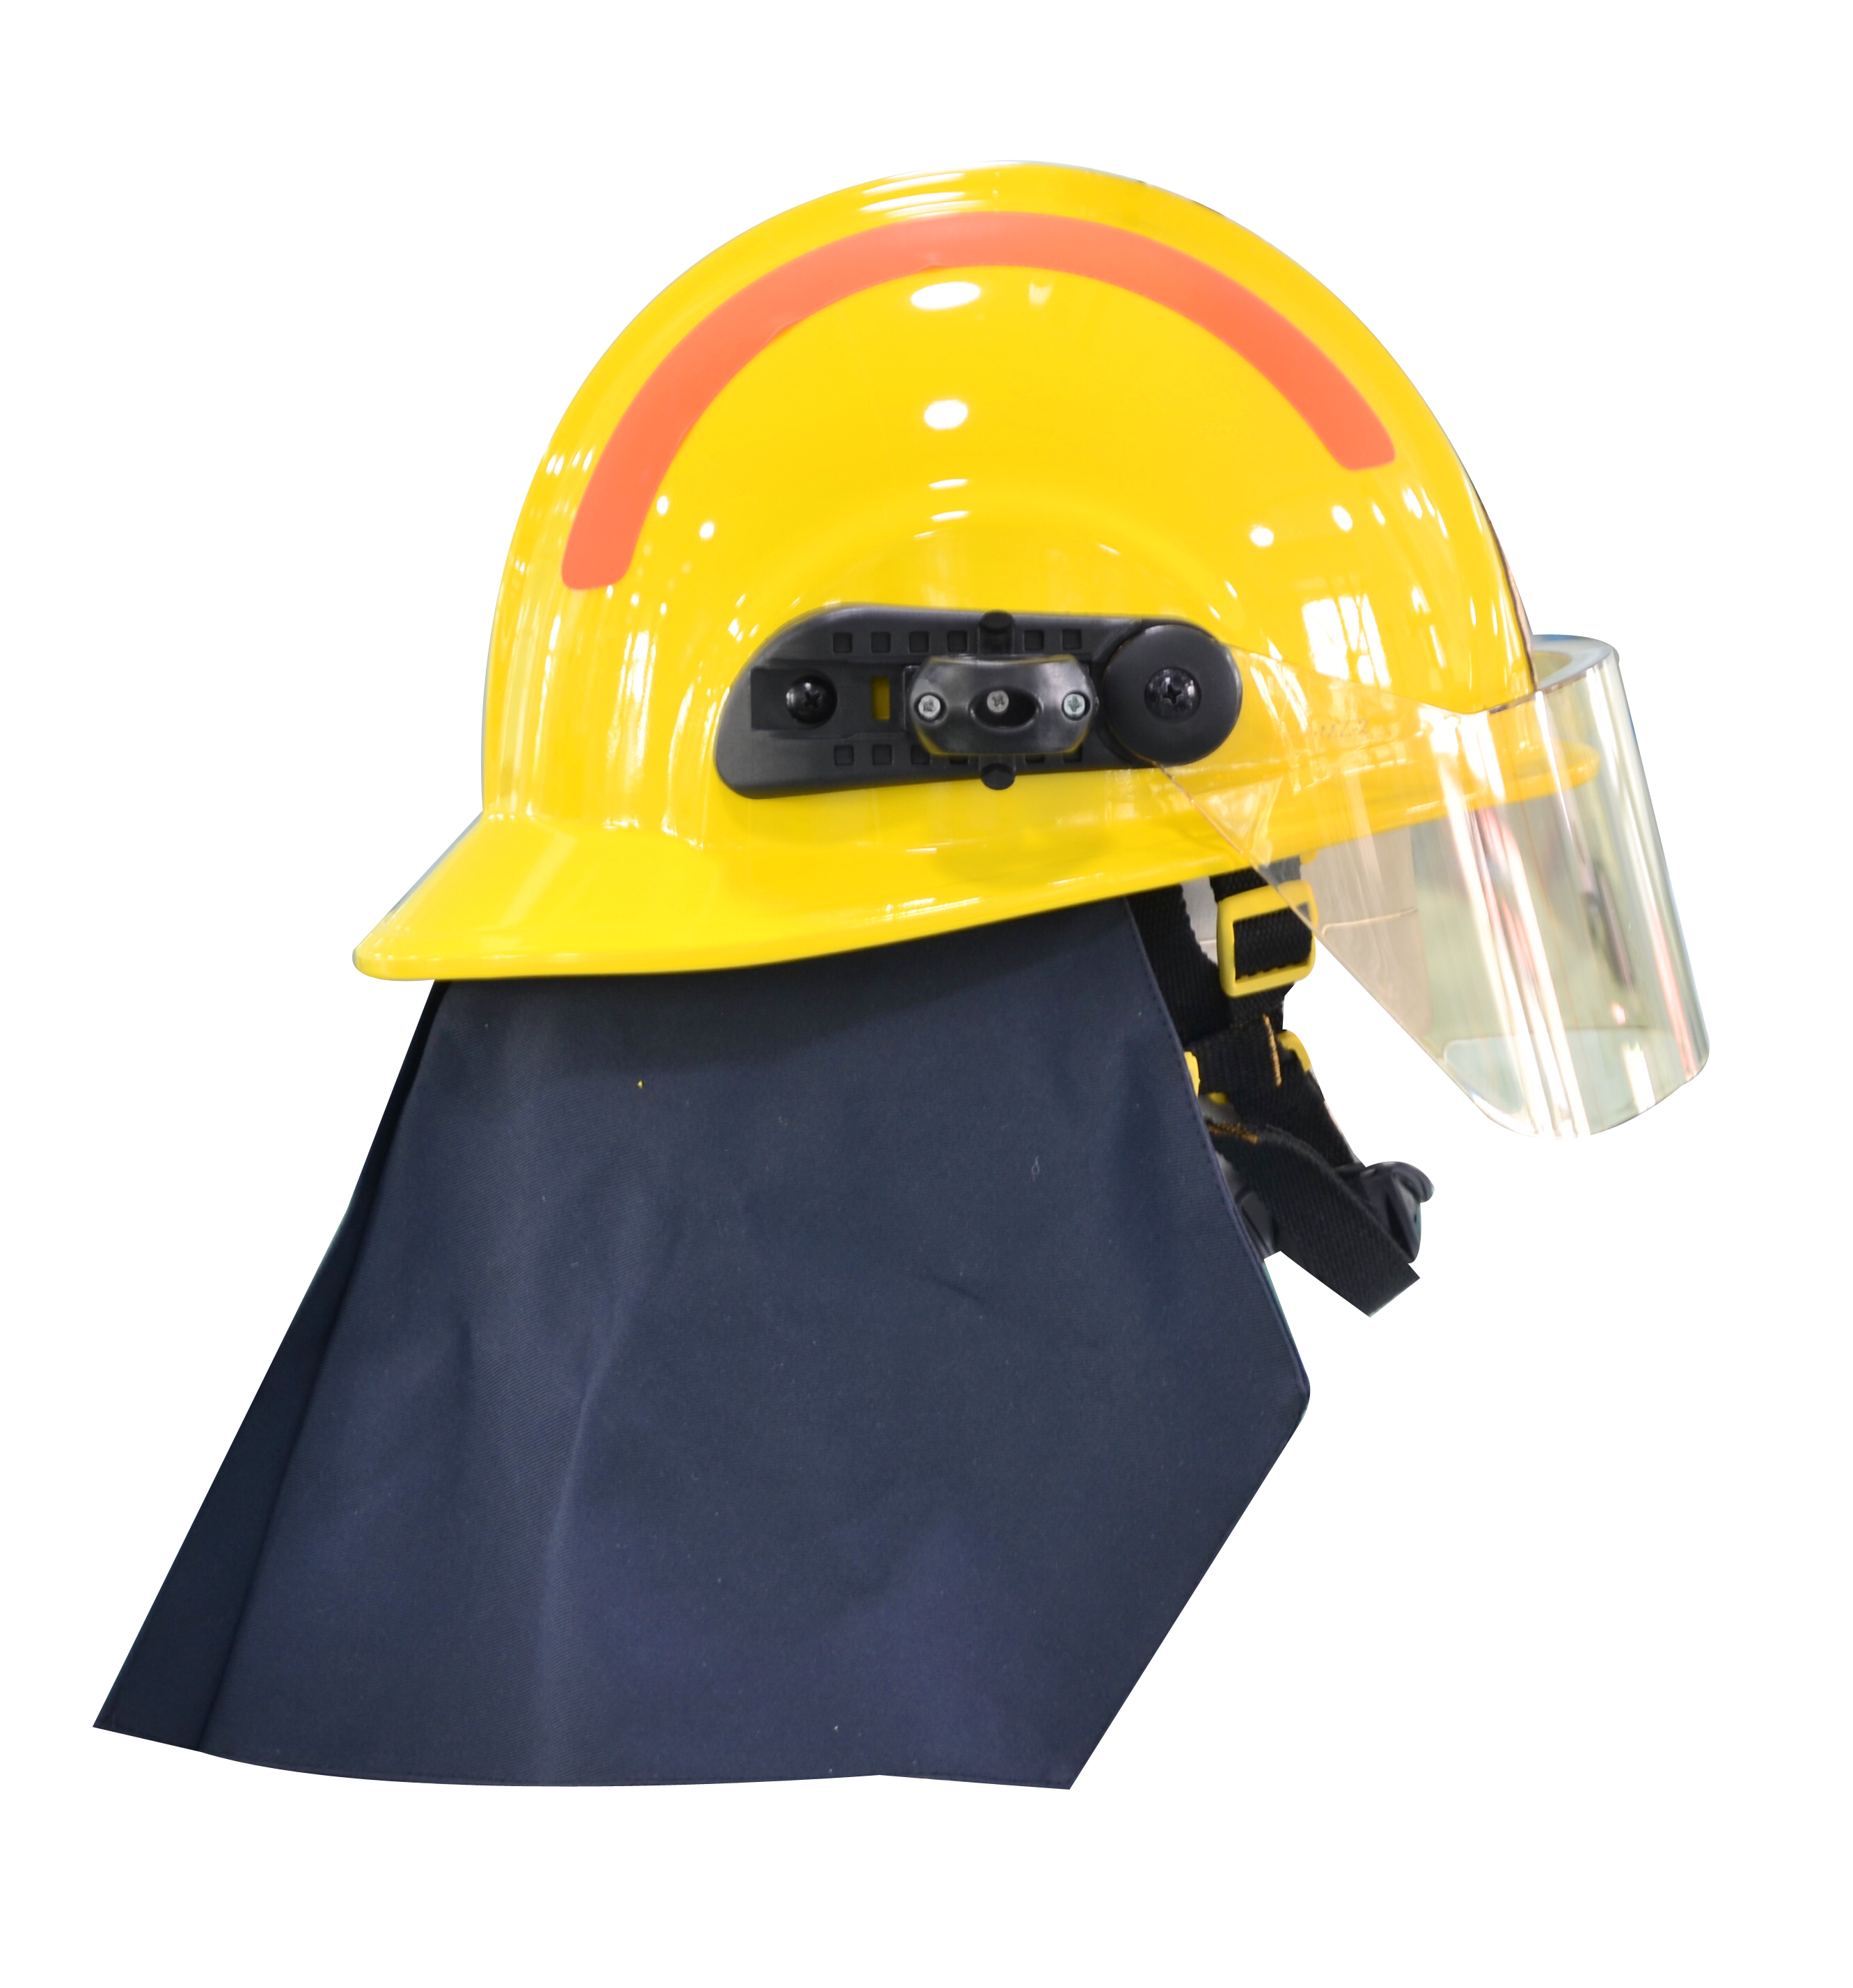 17式消防头盔